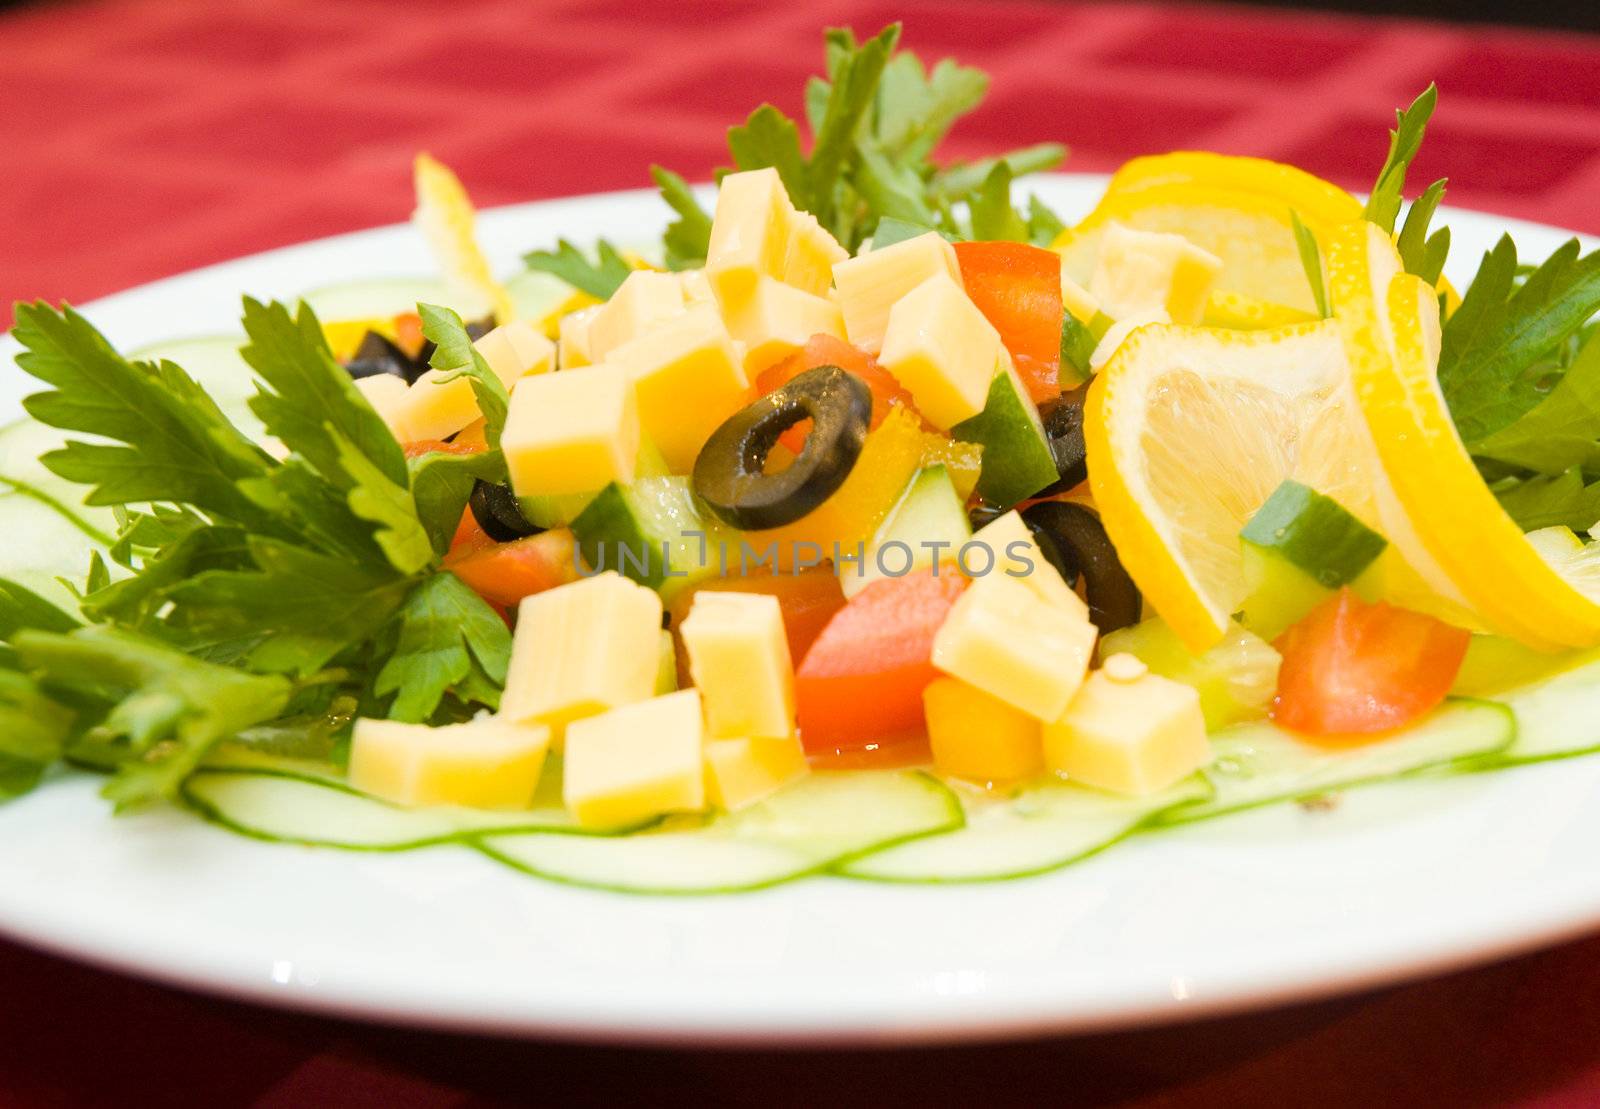 salad by semenovp